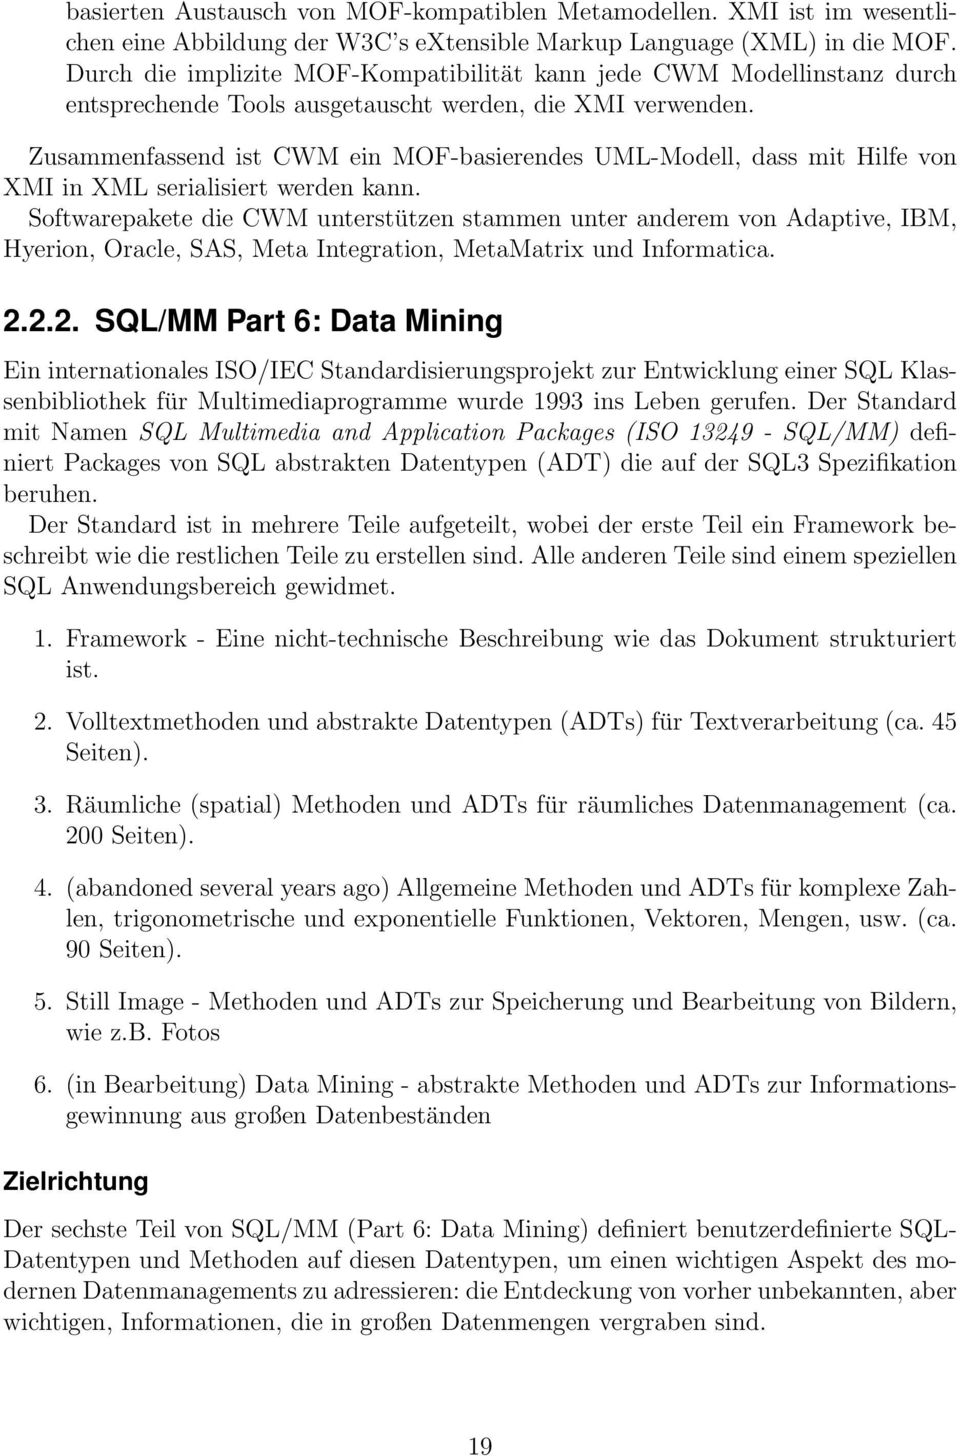 Zusammenfassend ist CWM ein MOF-basierendes UML-Modell, dass mit Hilfe von XMI in XML serialisiert werden kann.